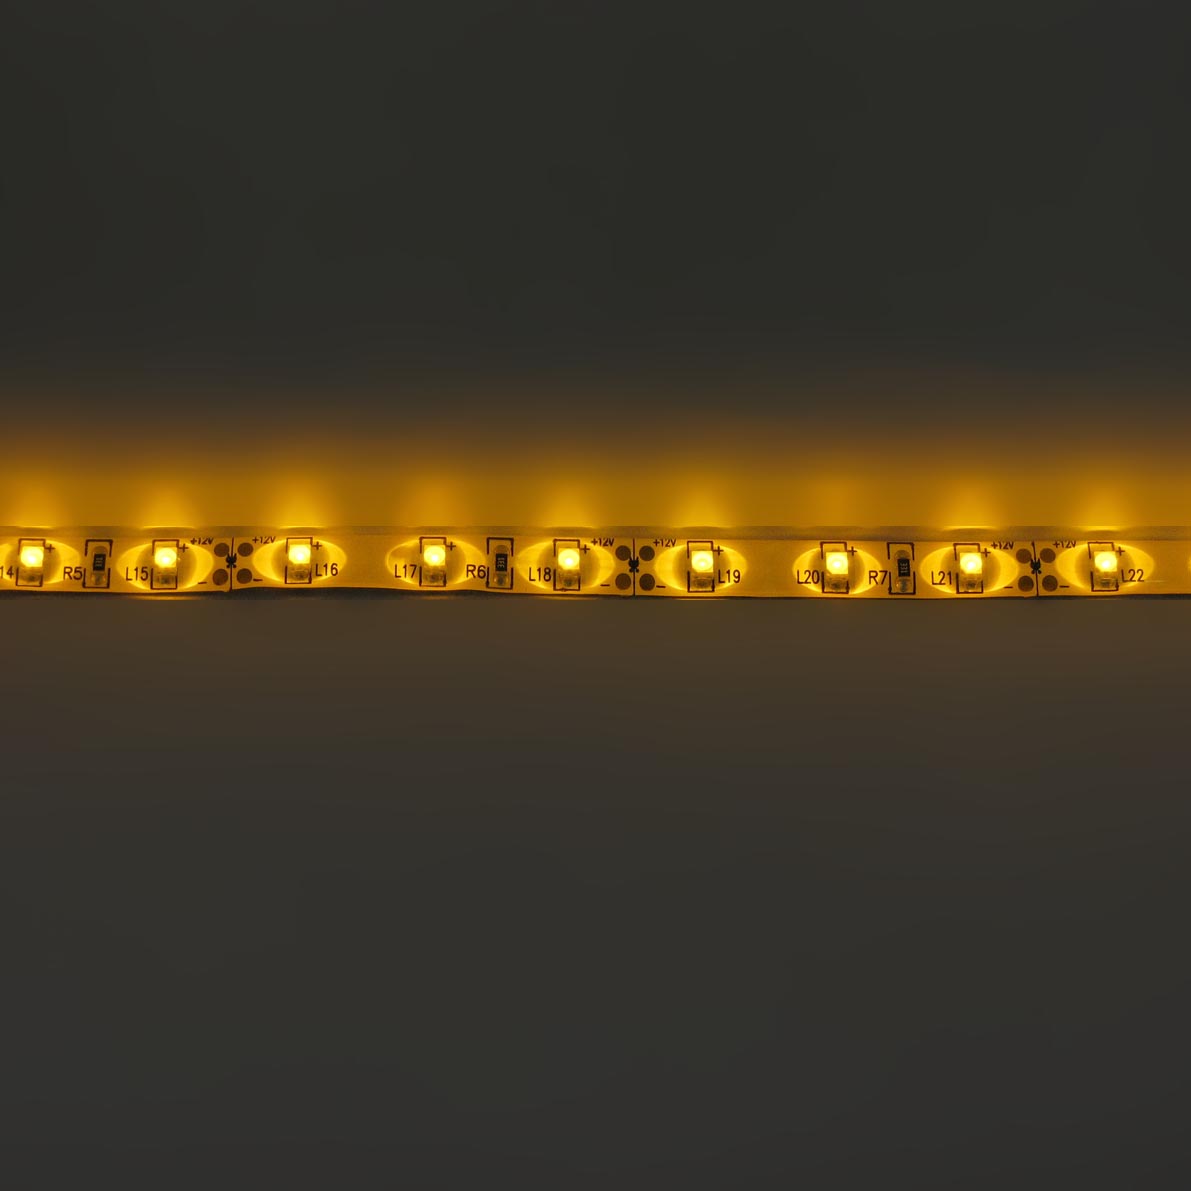 светодиодная лента standart pro class, 3528, 60 led/m, yellow, 12v, ip65, артикул 29002